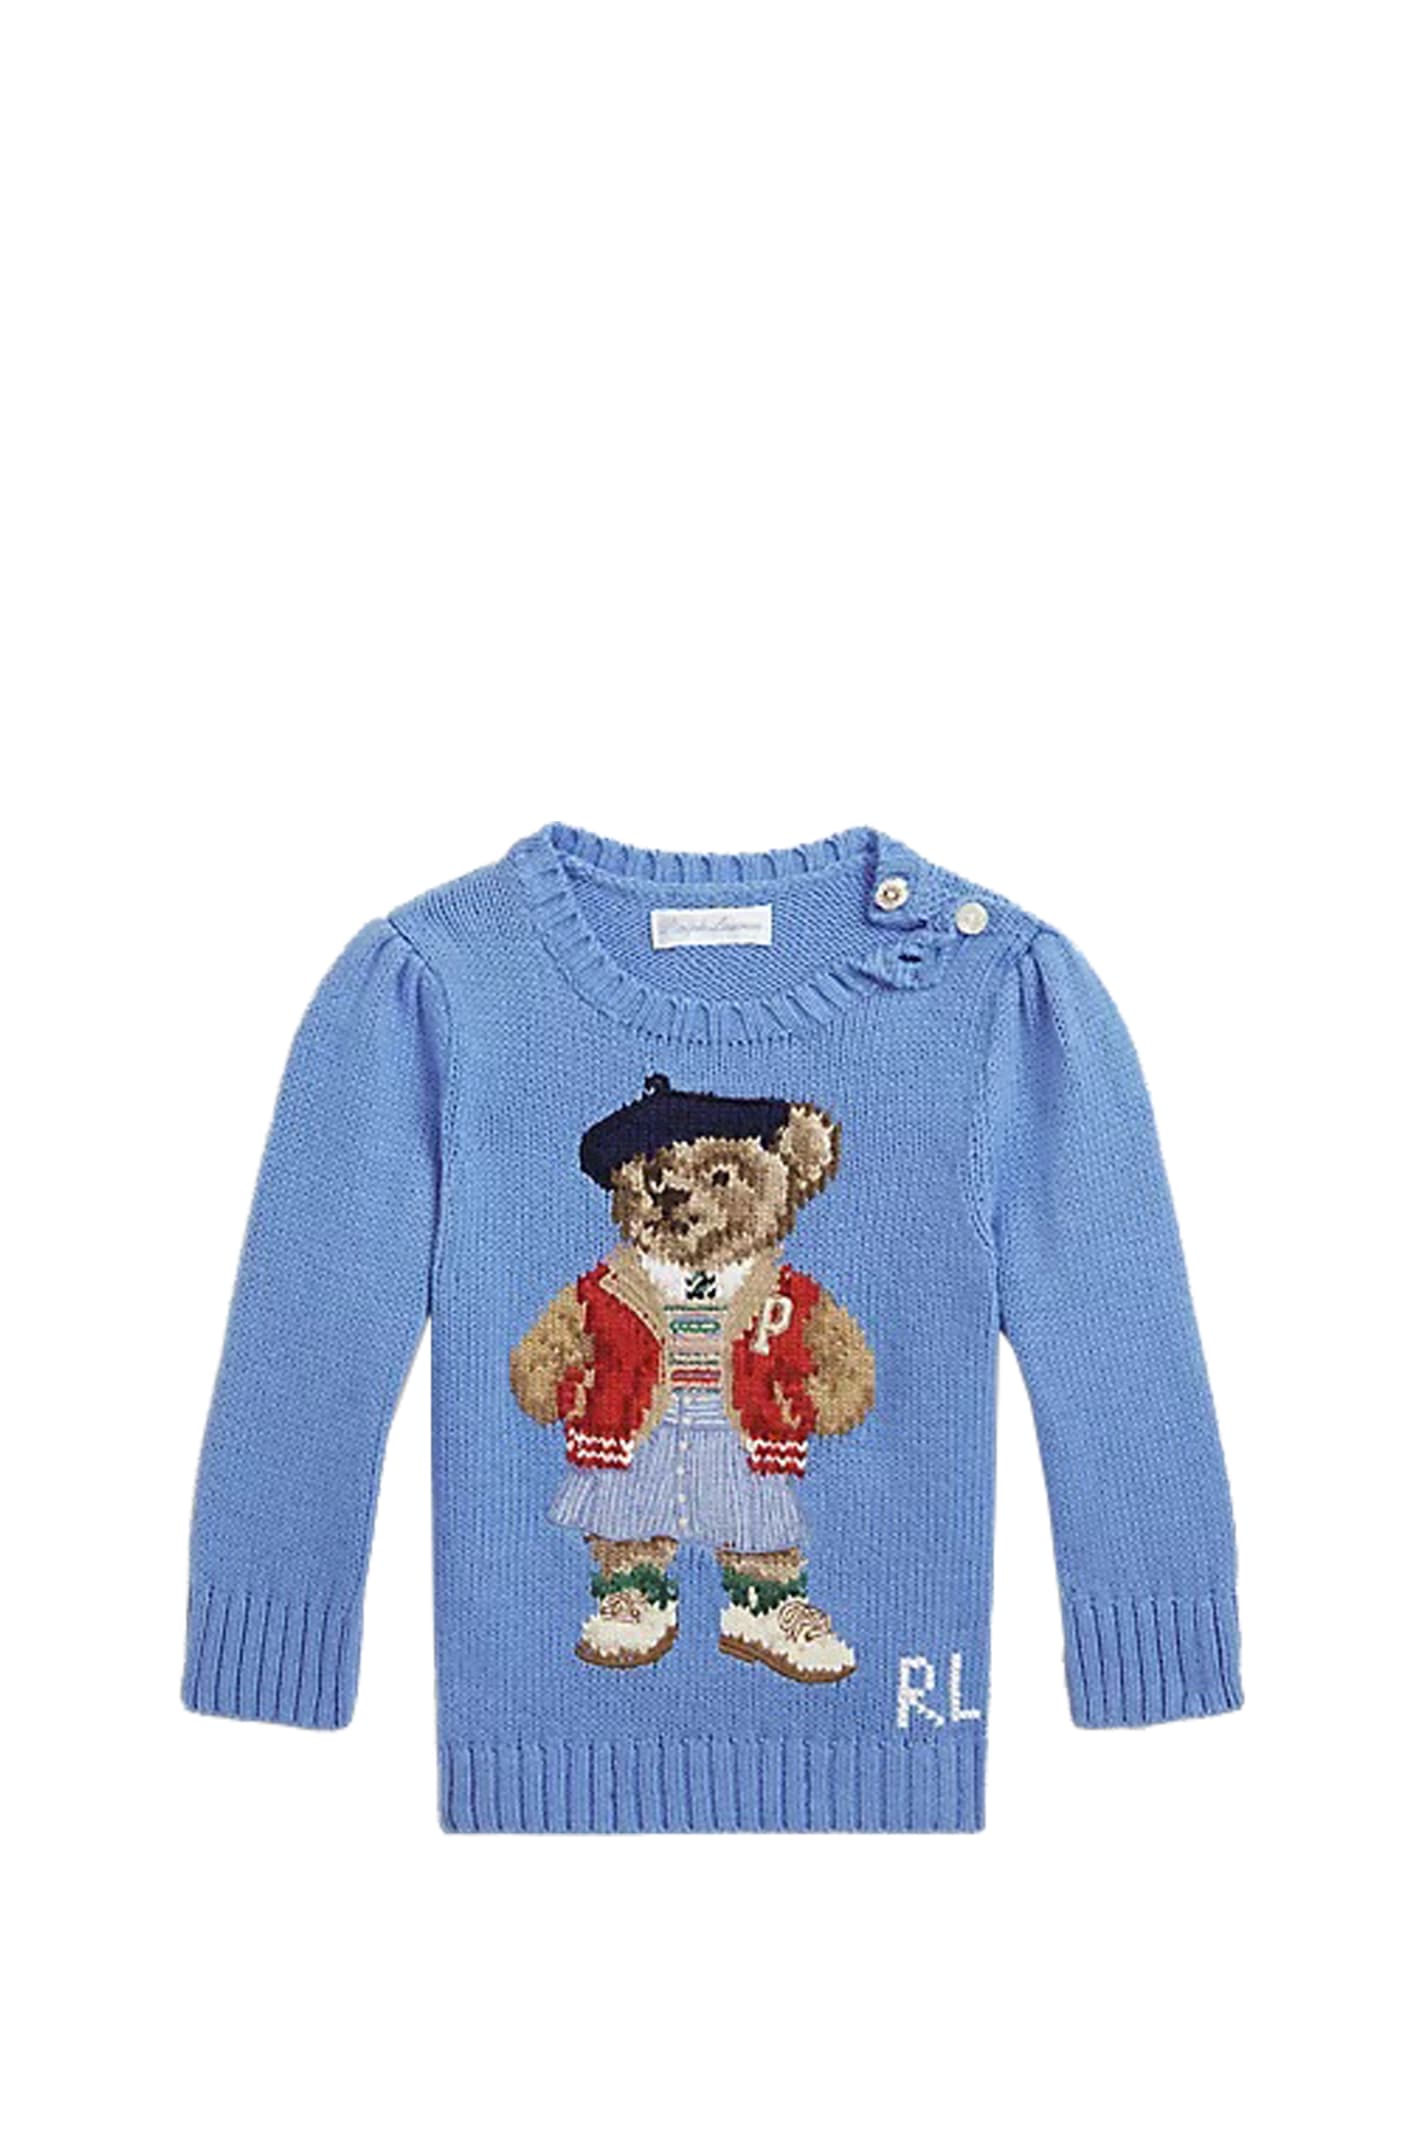 Ralph Lauren Babies' Cotton Sweater In Light Blue